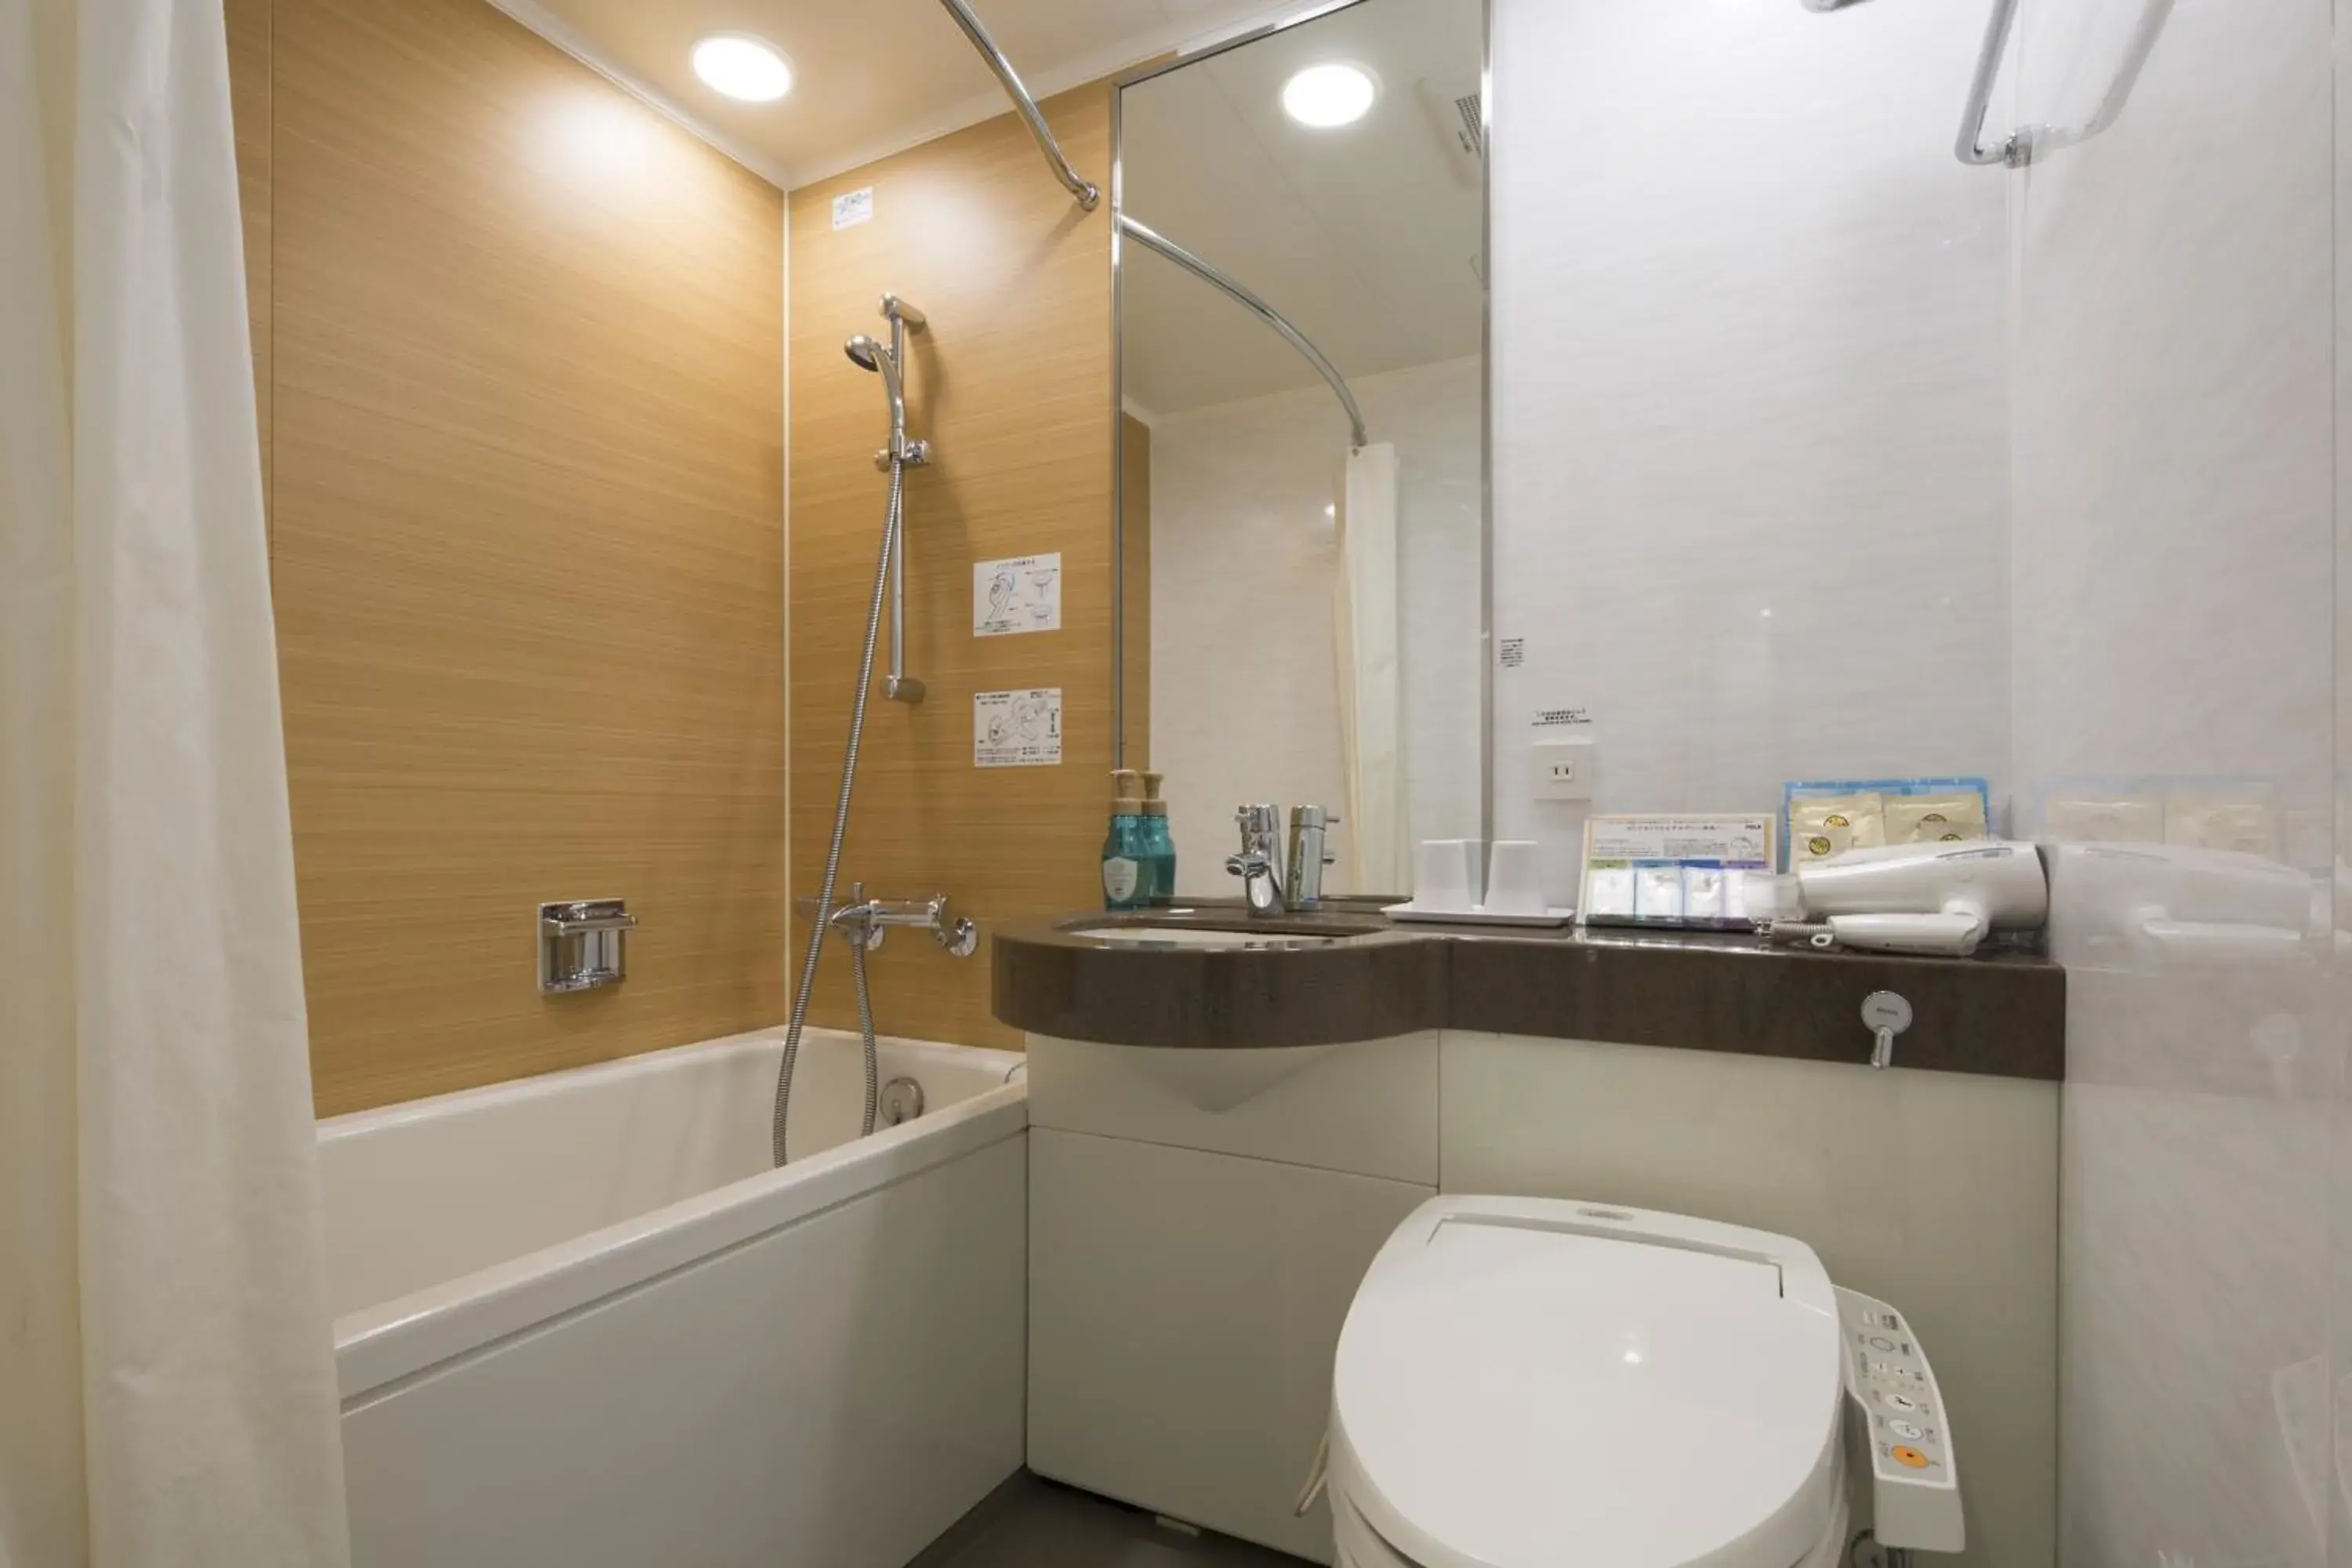 Area and facilities, Bathroom in Shizutetsu Hotel Prezio Shizuoka Ekinan